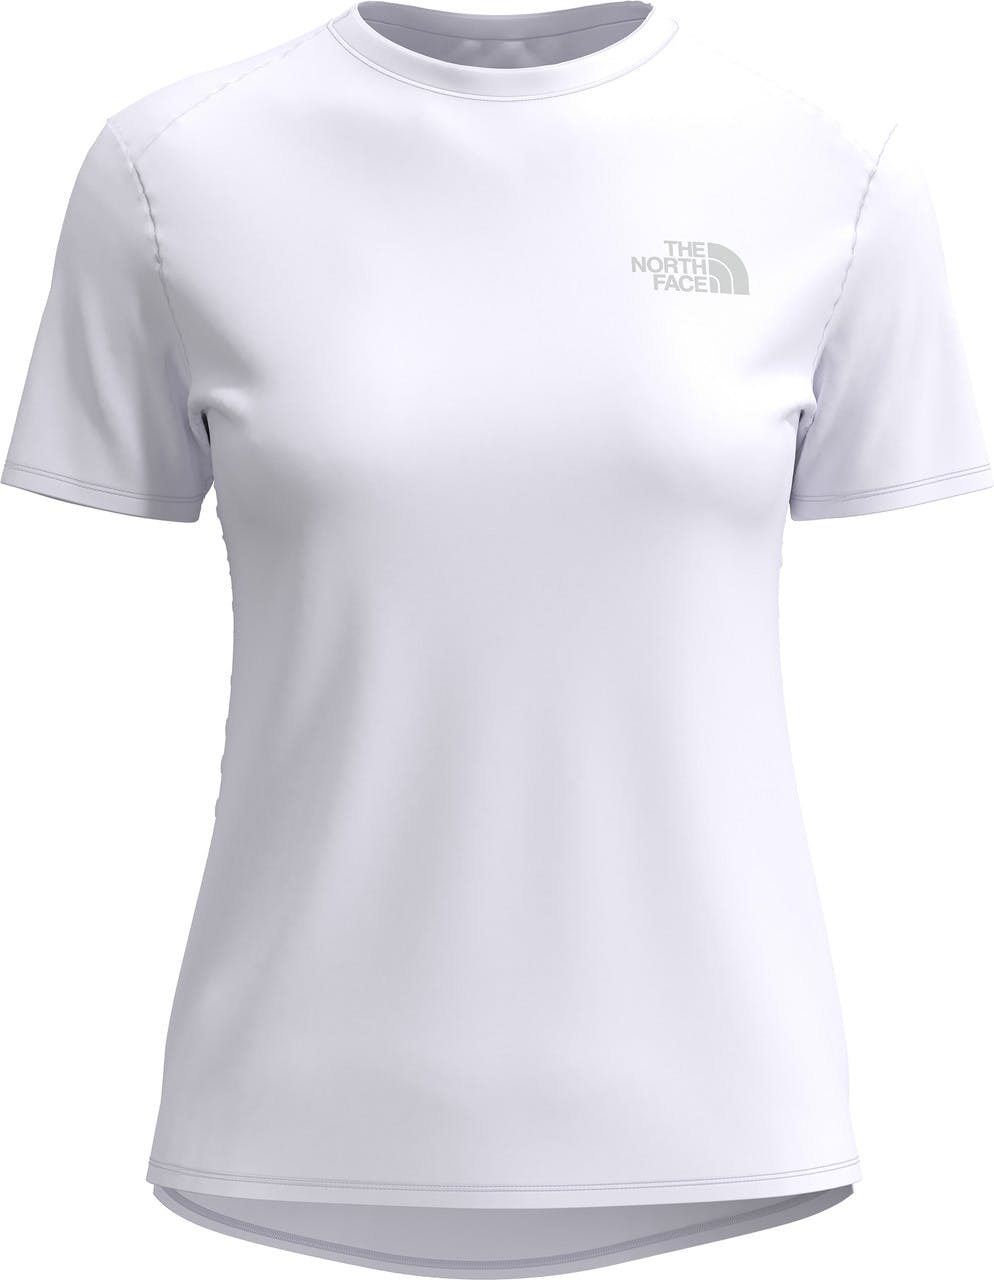 Sunriser Short Sleeve T-Shirt TNF White